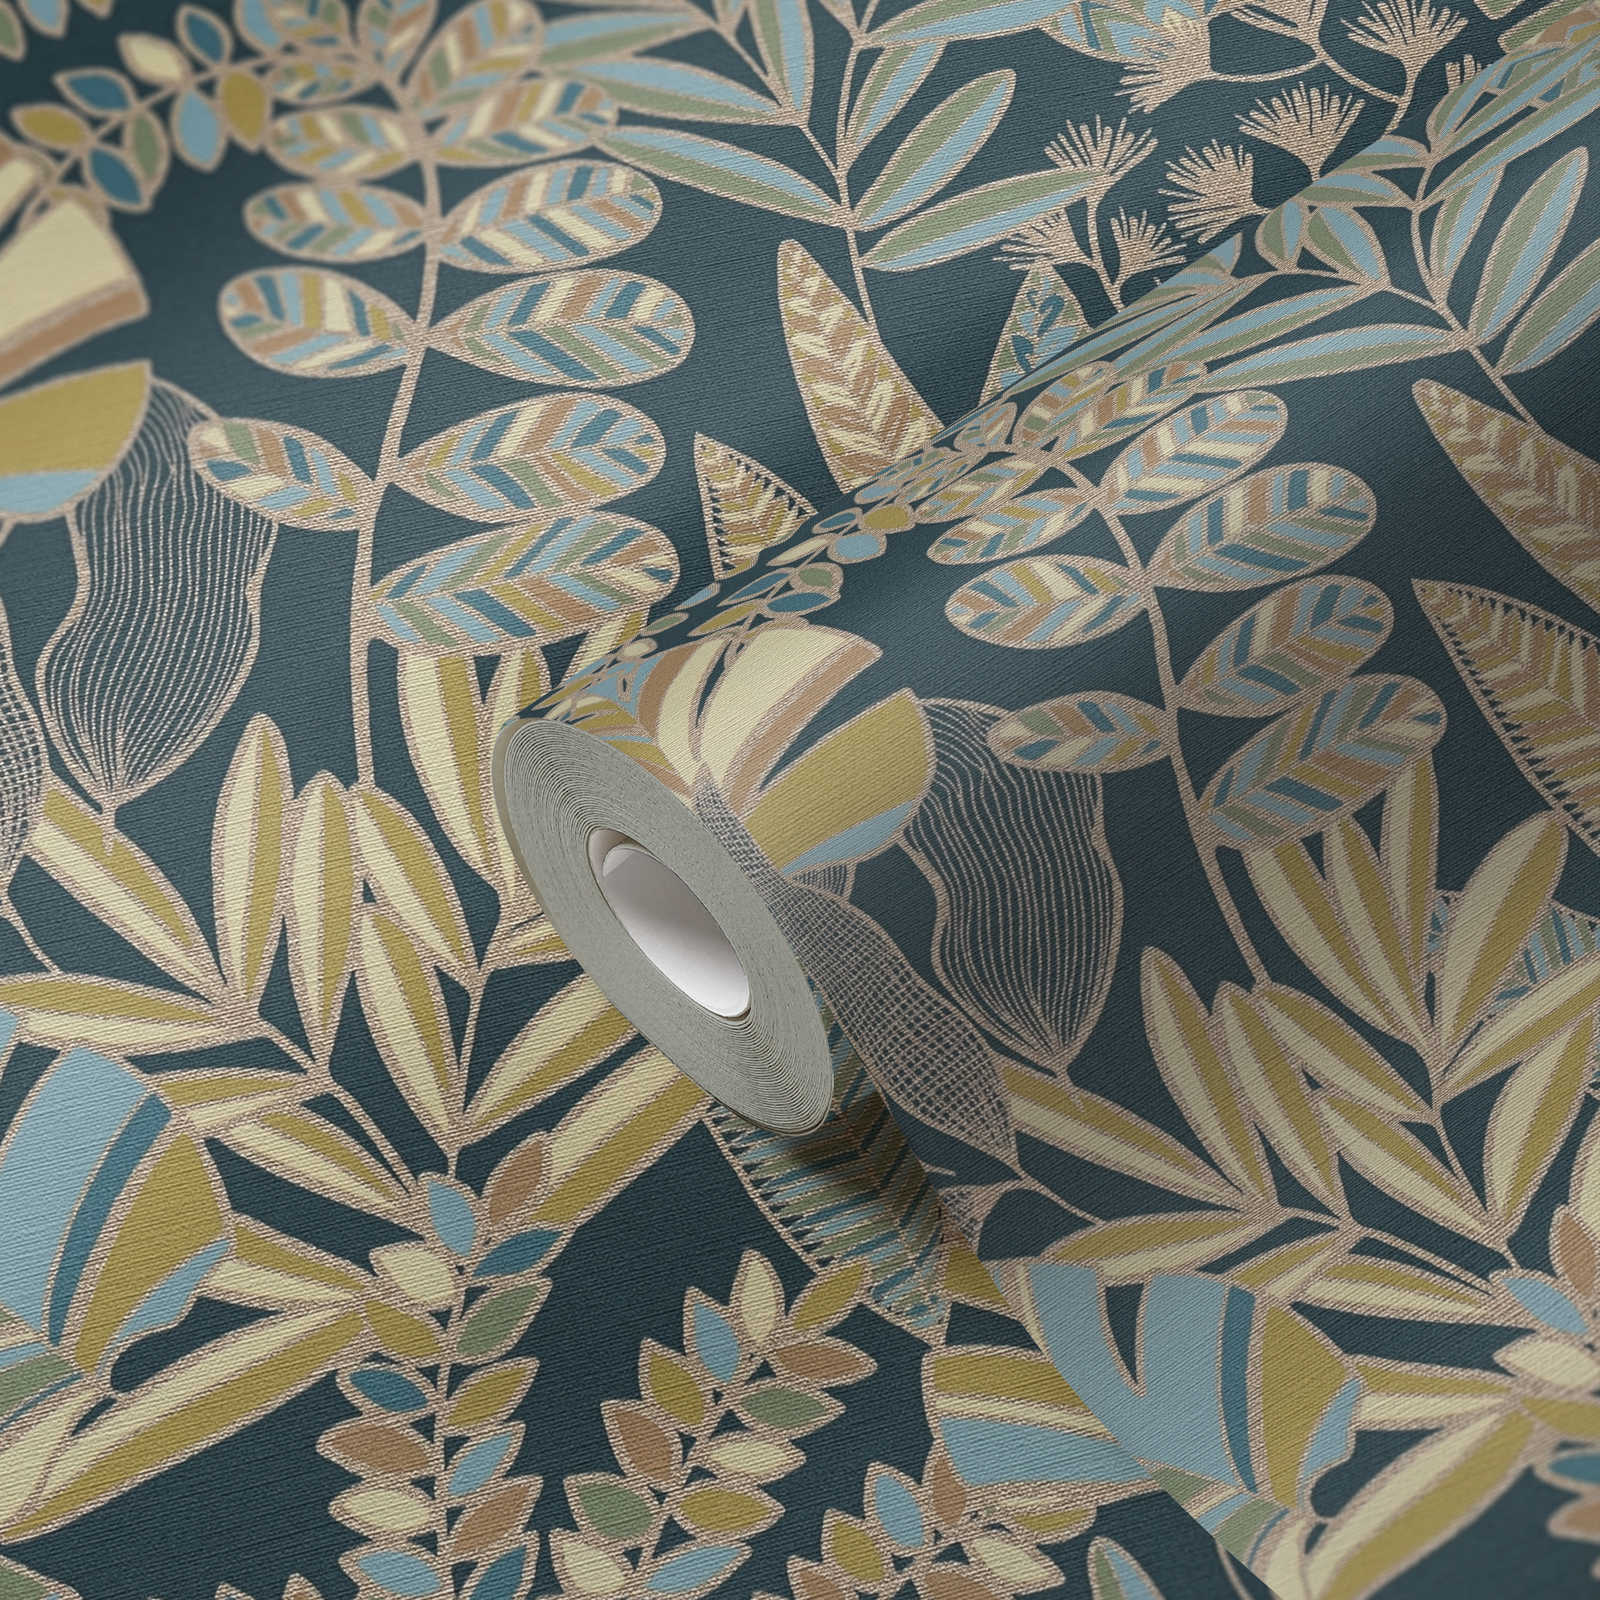             Papel pintado no tejido de estilo selvático con efecto brillante - azul, dorado, verde
        